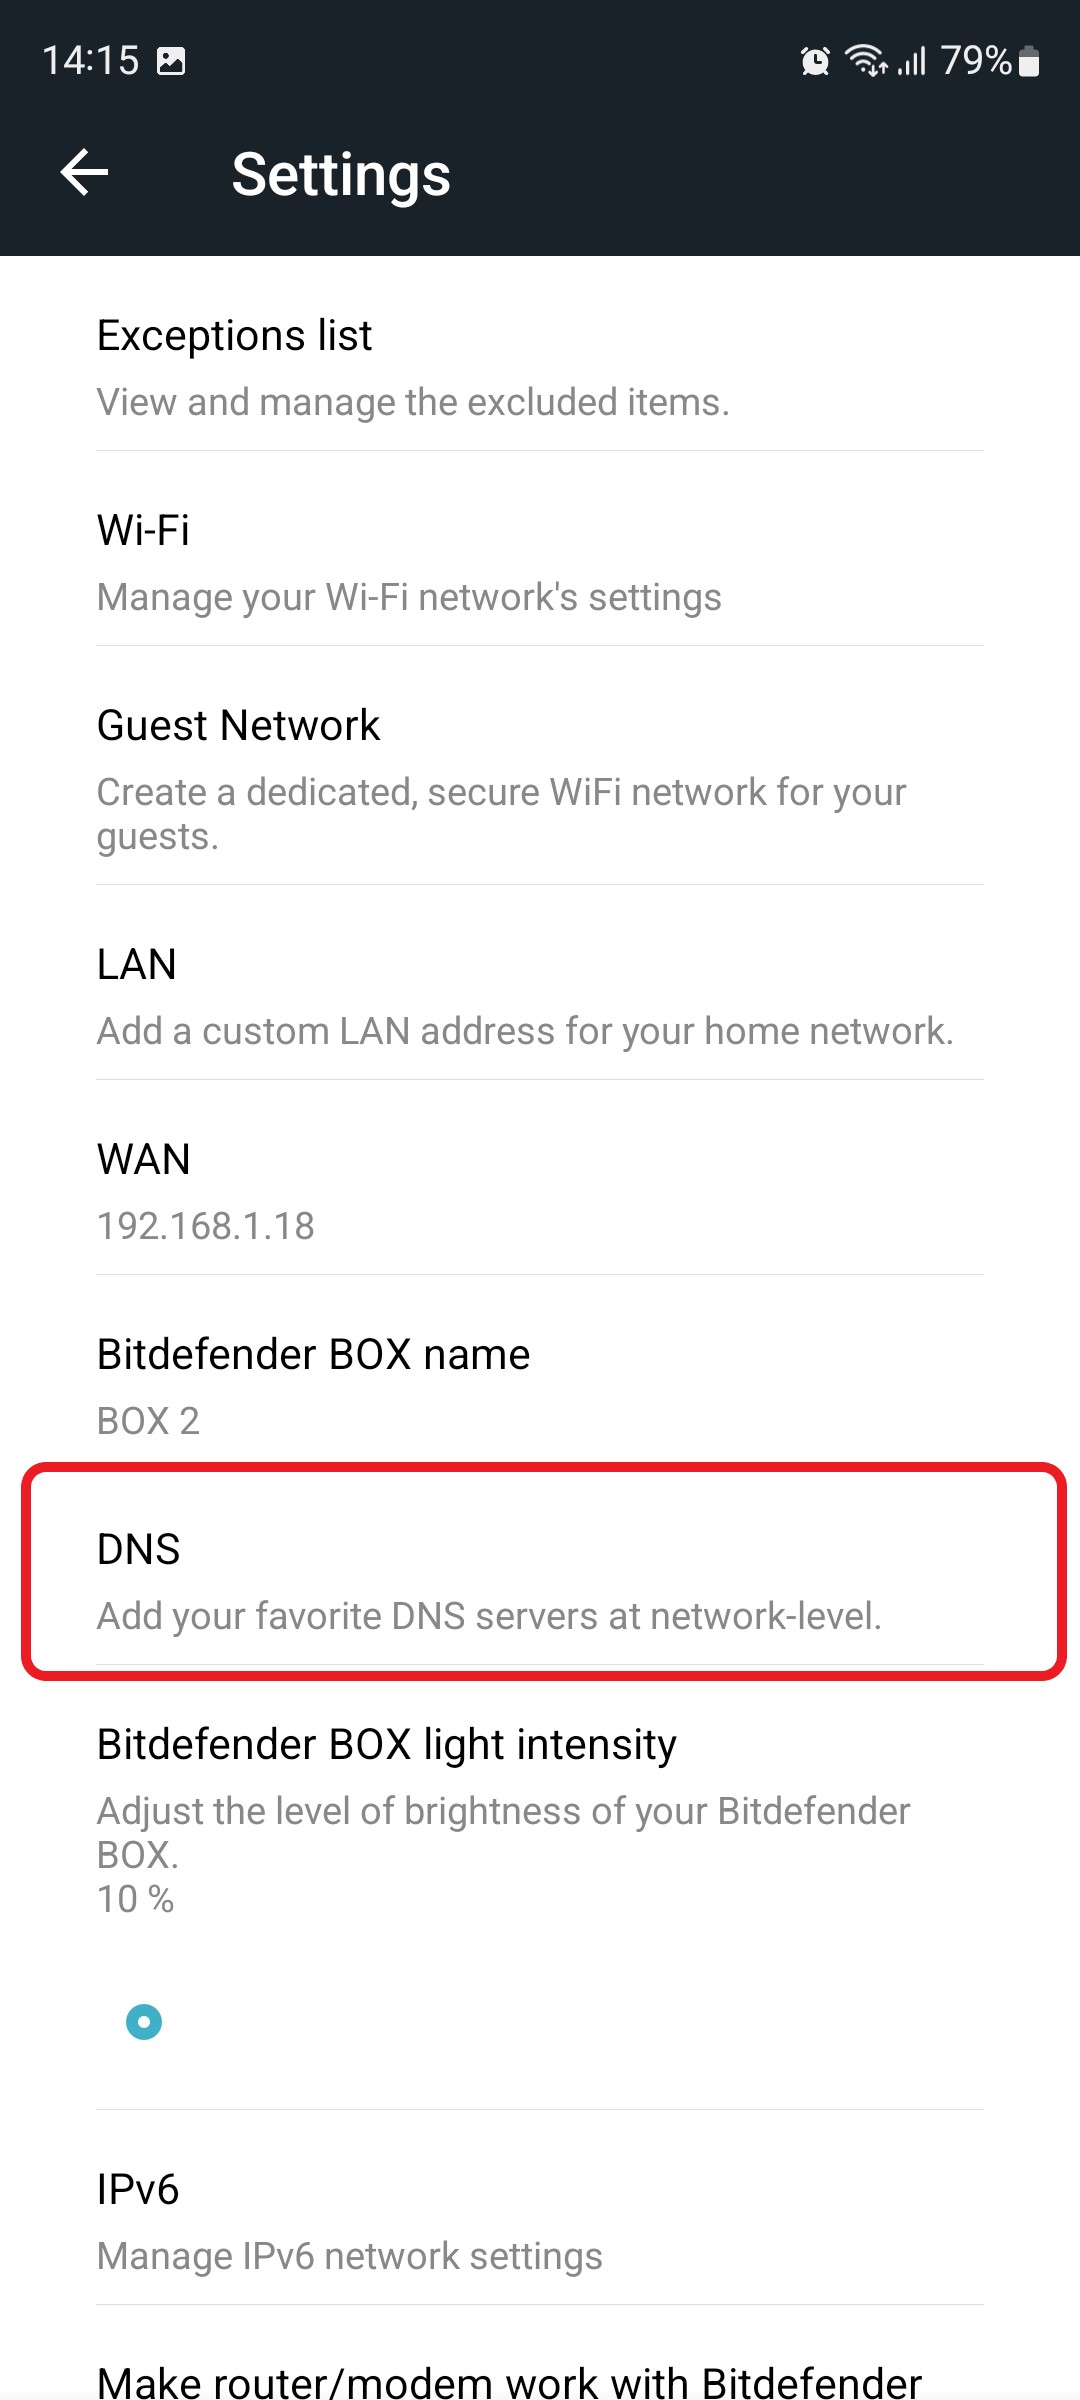 How to set up a custom DNS server on Bitdefender BOX